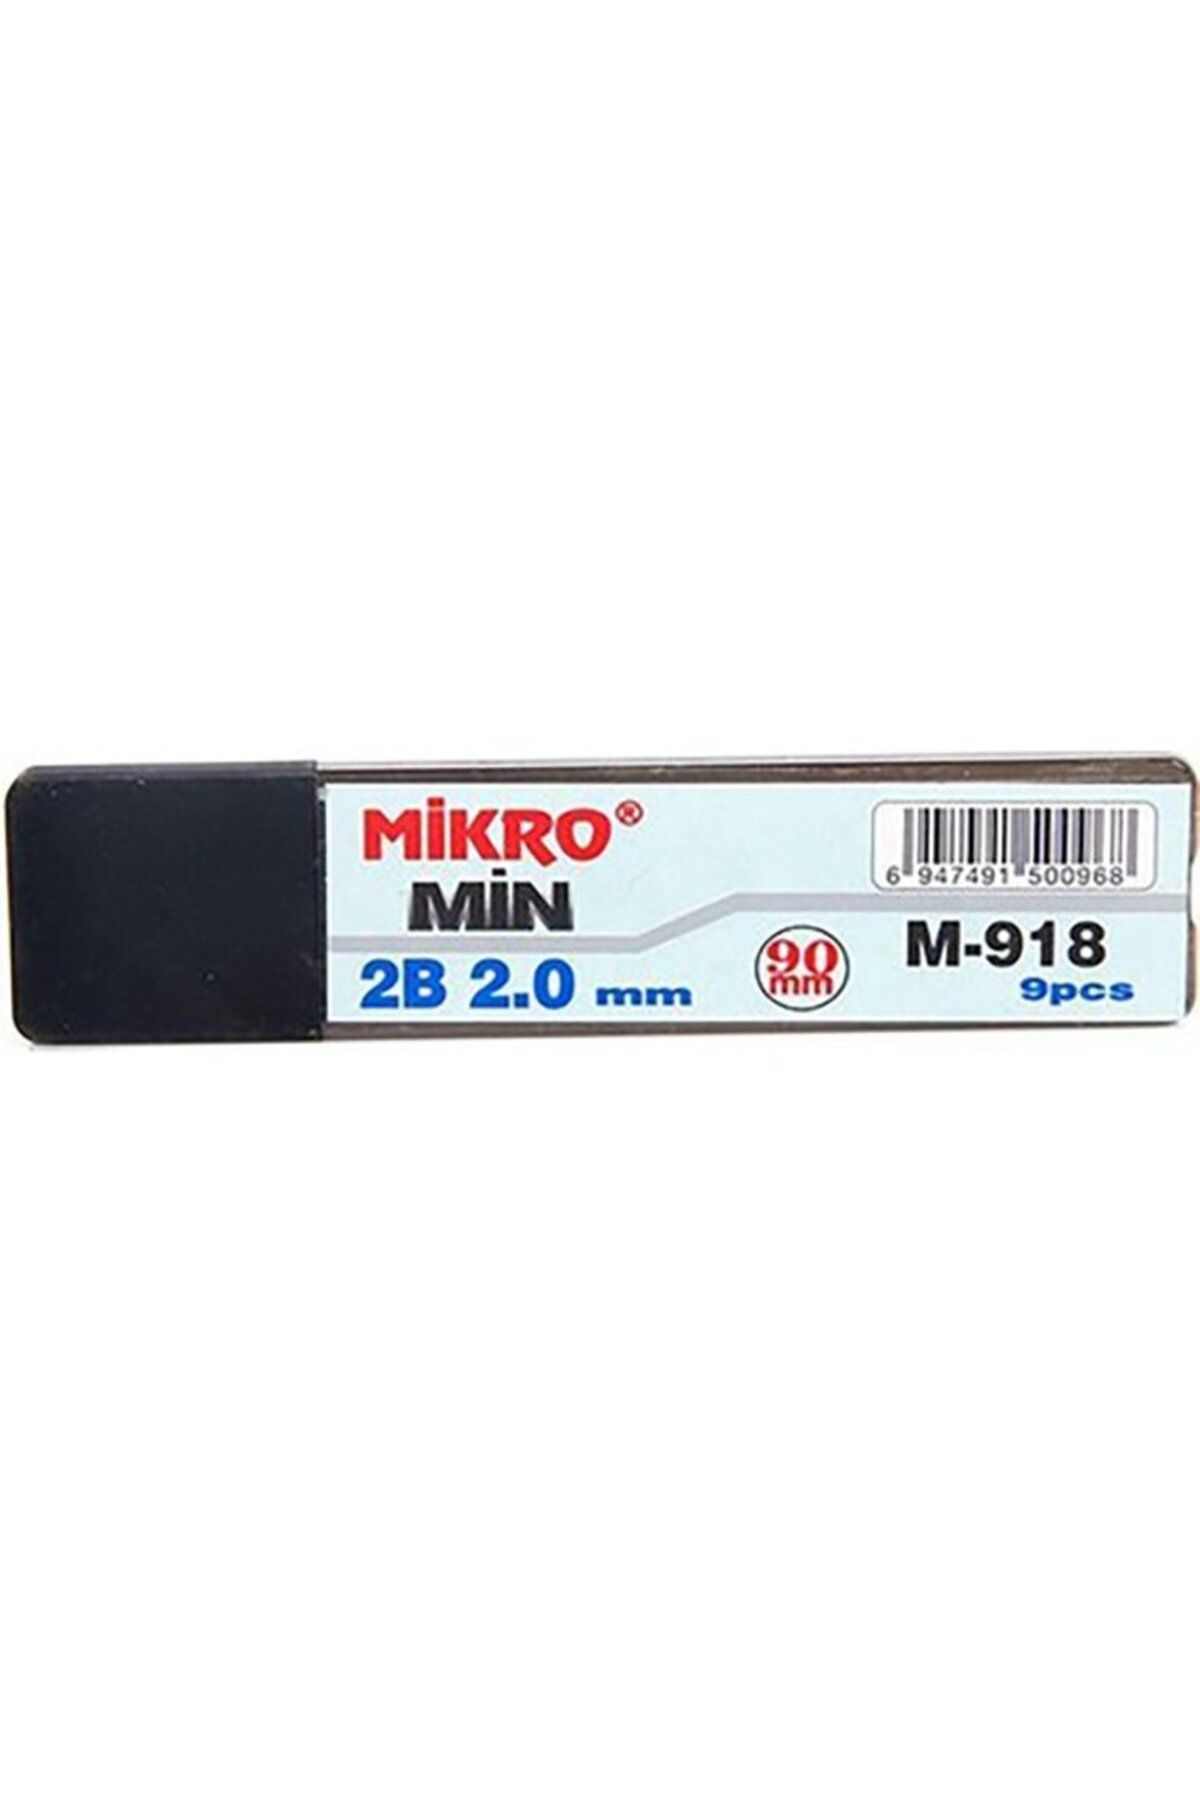 Mikro Min 2.0 90 Mm M-918